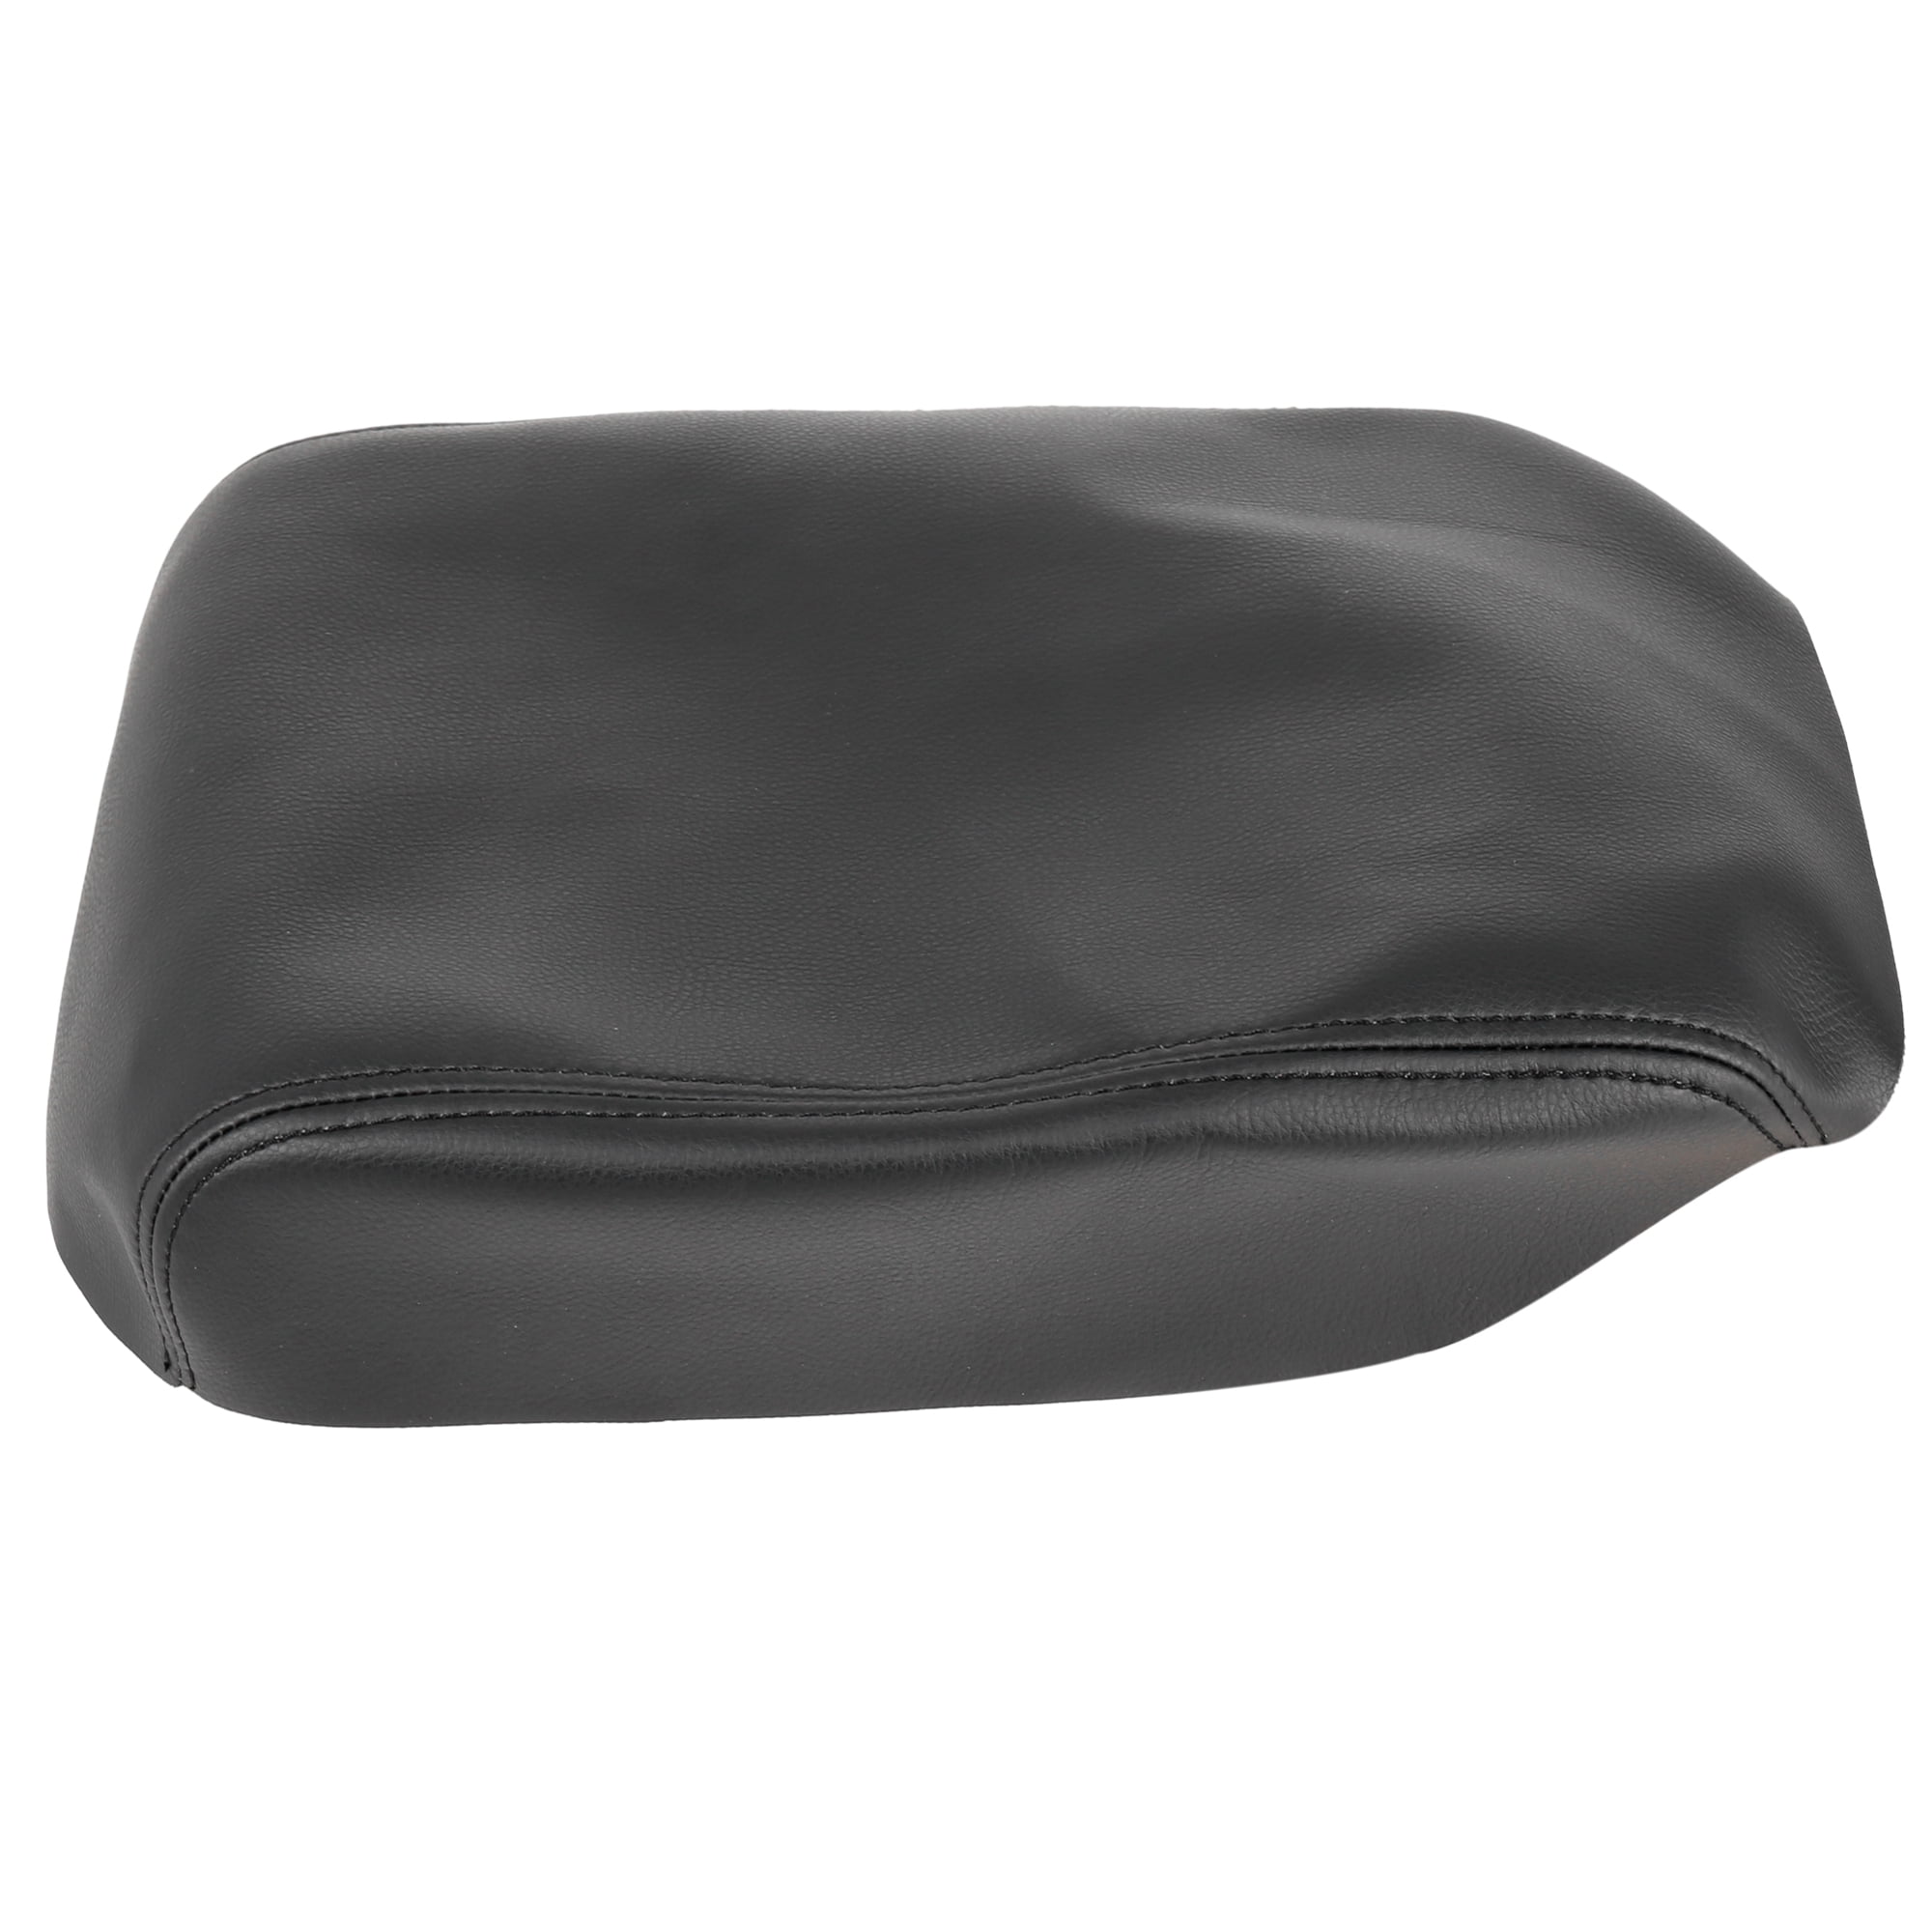 X AUTOHAUX Center Console Lid Armrest Cover For Honda Pilot 2009-2015 Pad Replacement Microfiber Leather Black 